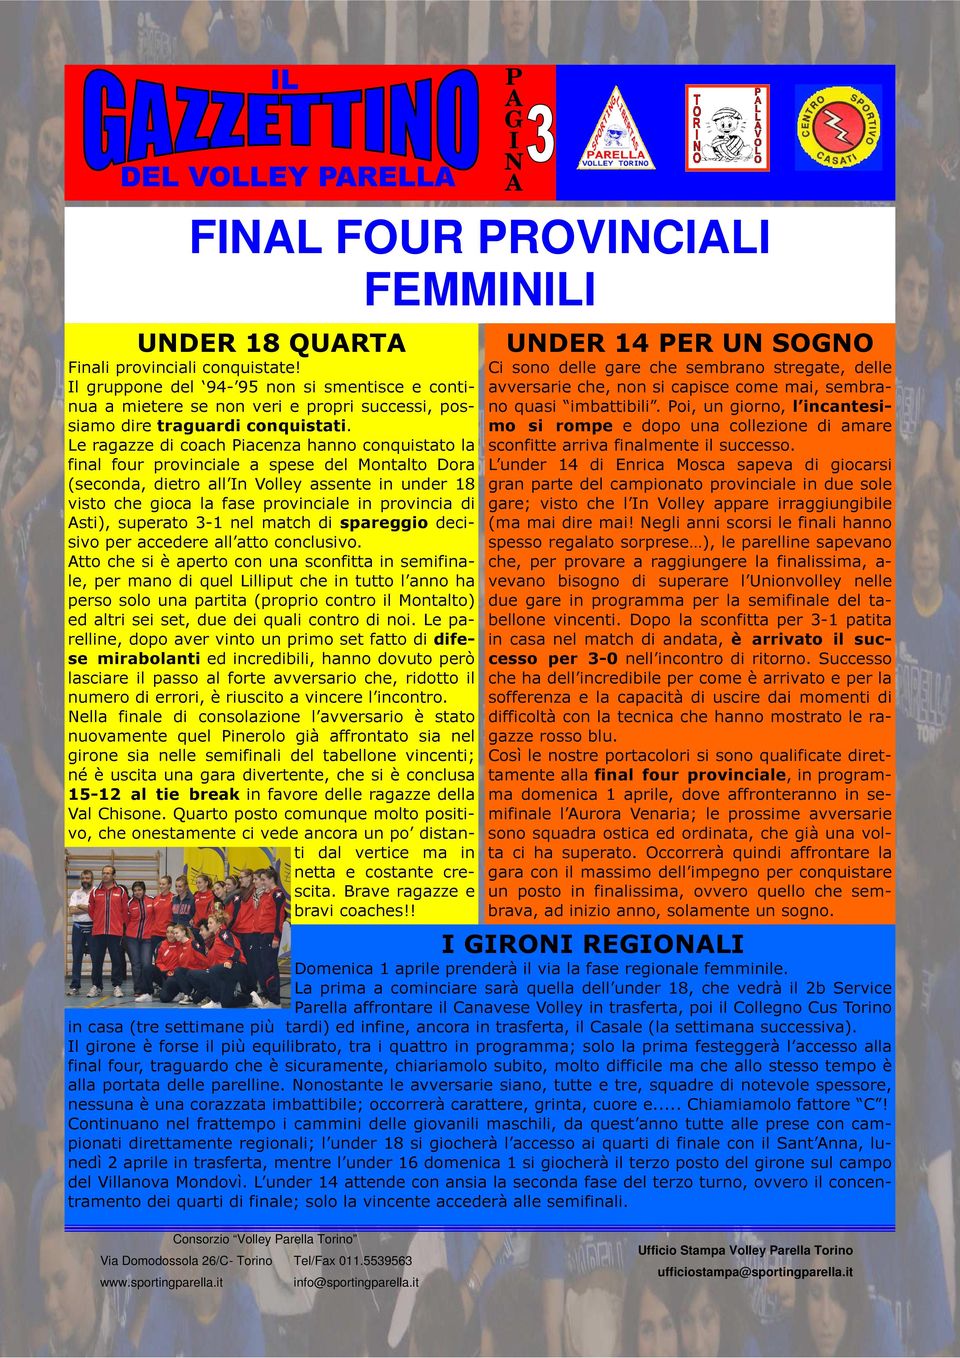 Le ragazze di coach iacenza hanno conquistato la final four provinciale a spese del Montalto Dora (seconda, dietro all n Volley assente in under 18 visto che gioca la fase provinciale in provincia di